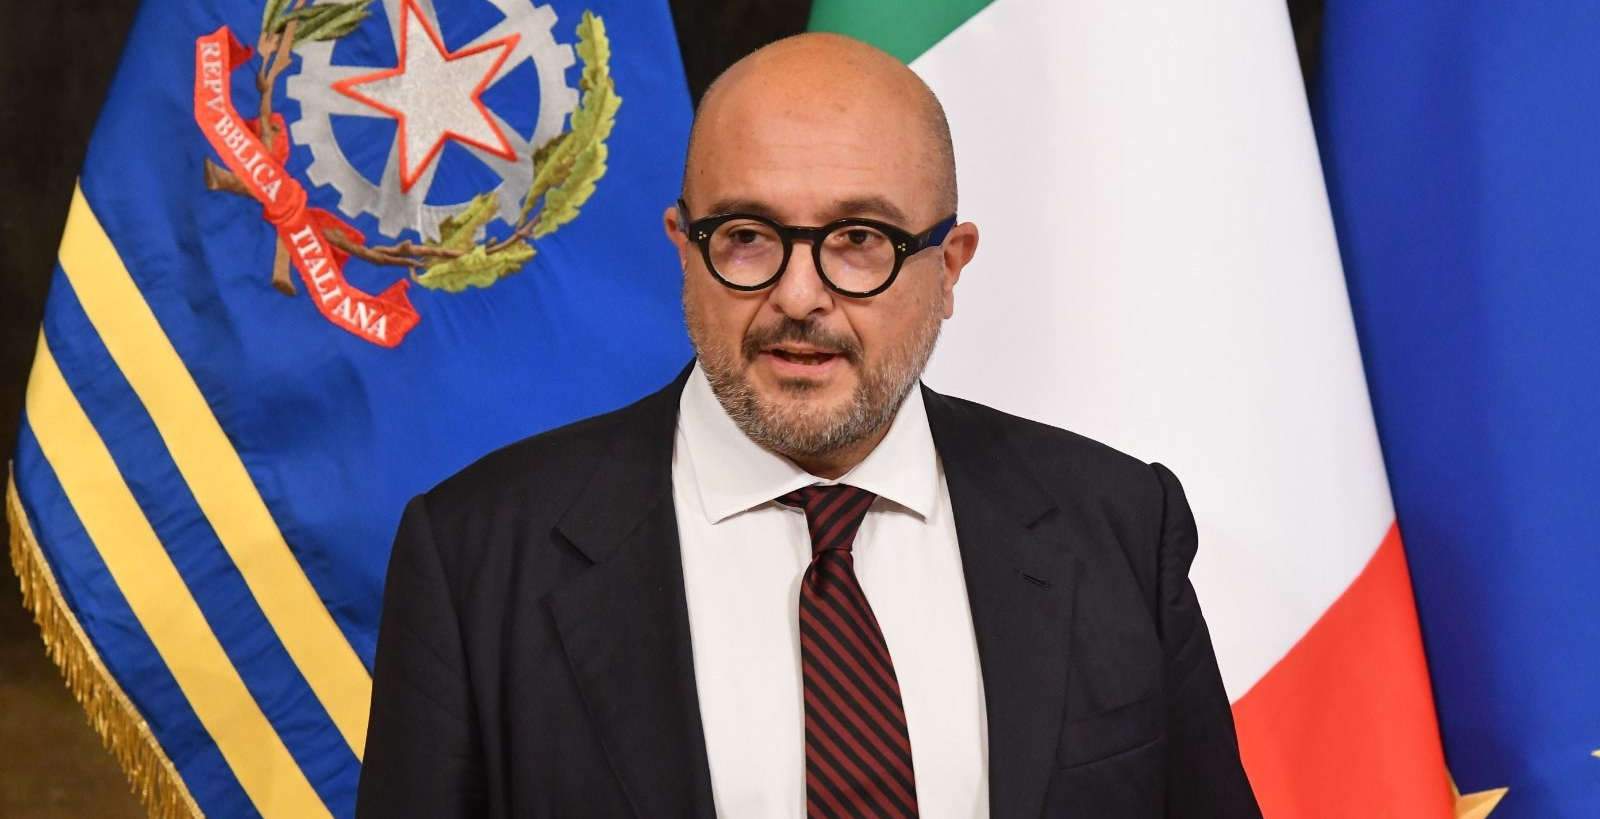 Le ministre Sangiuliano tente d'abolir la culture de l'annulation par décret